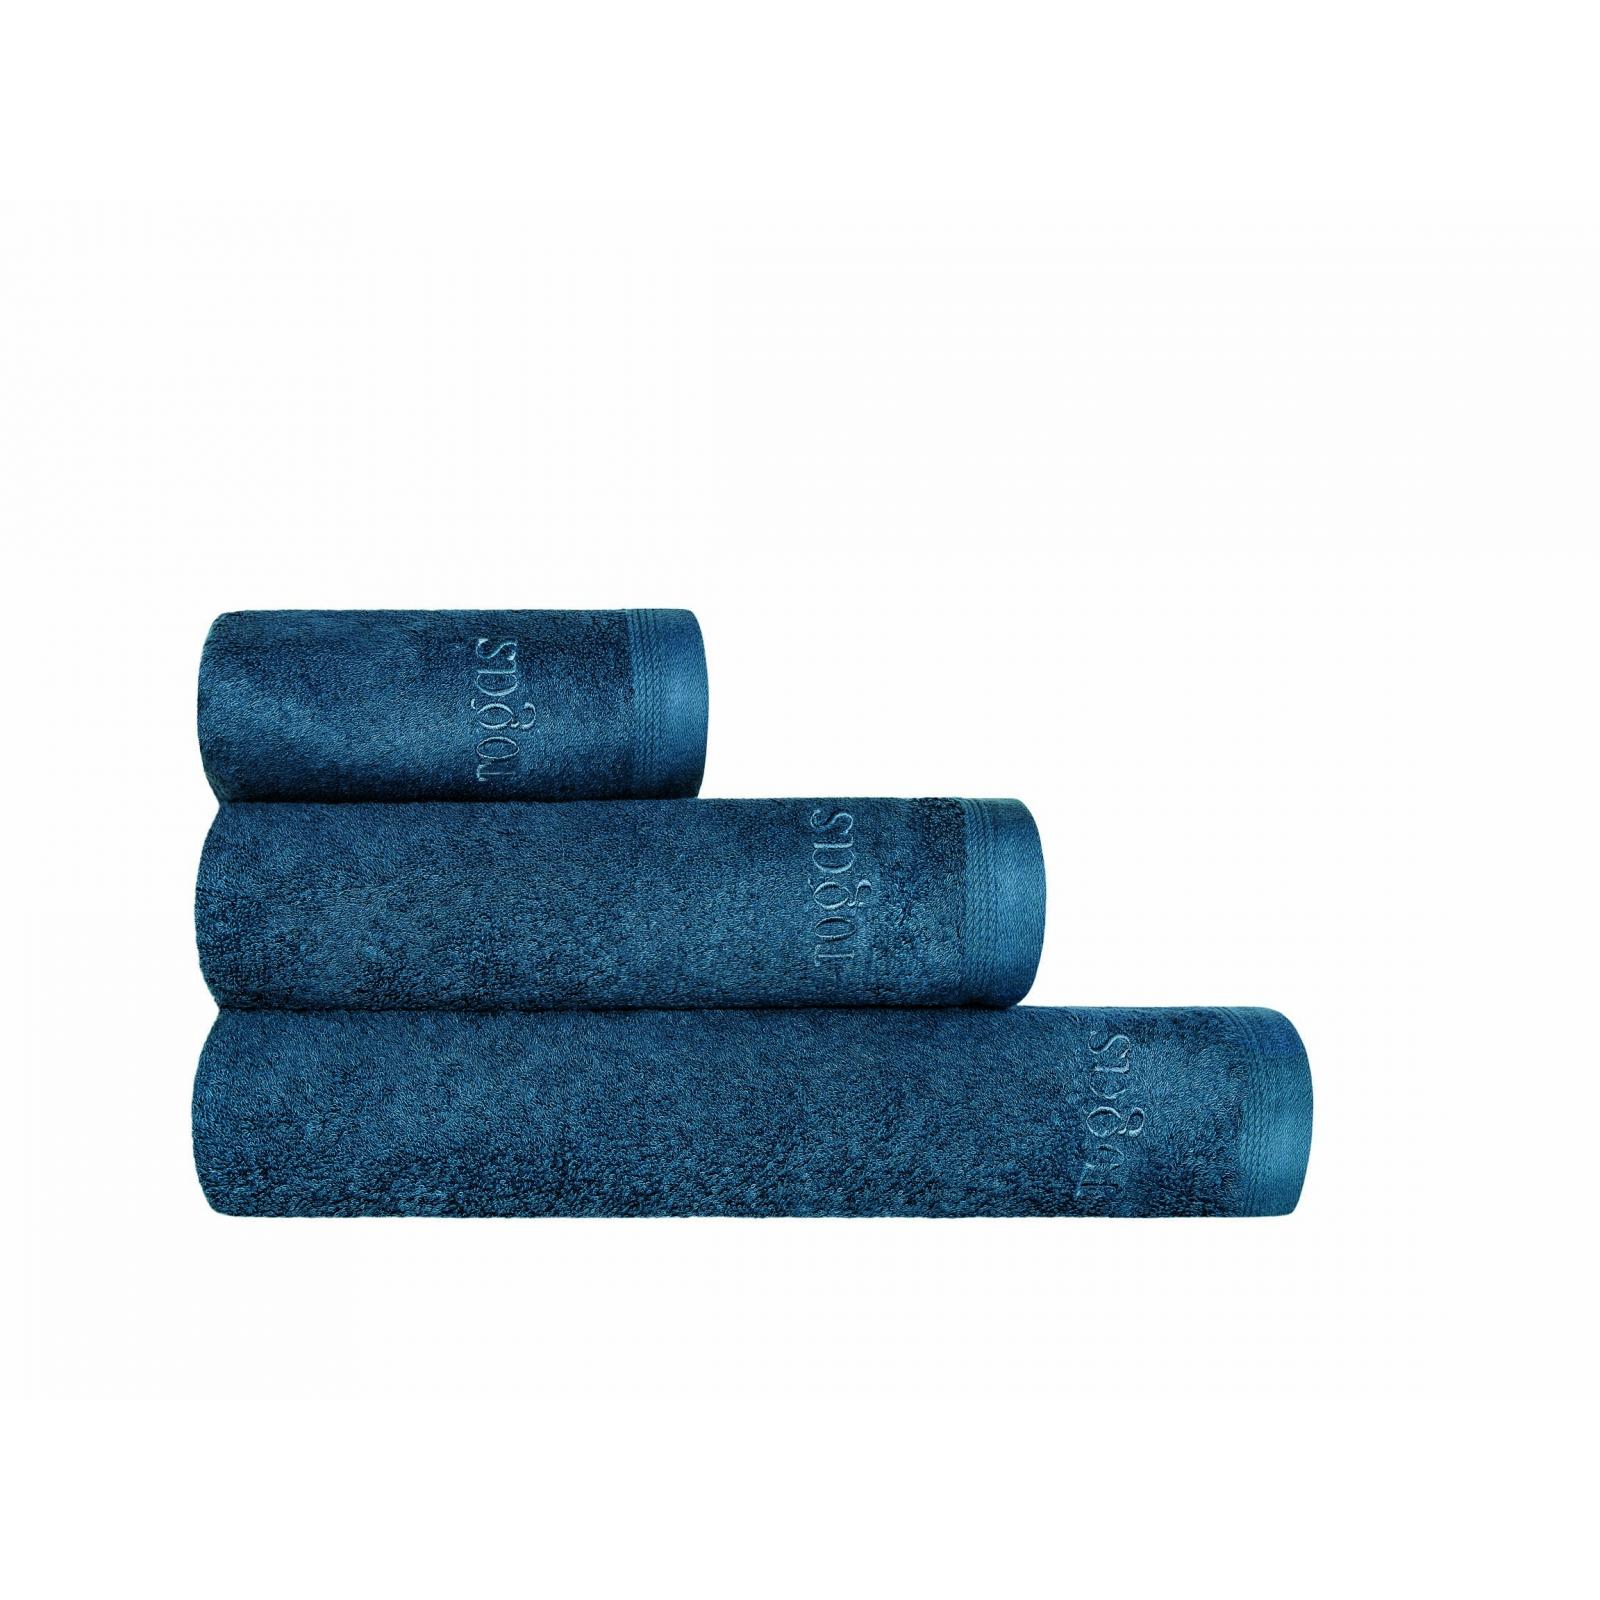 Полотенце Togas Пуатье темно-синее 70х140 полотенце togas шантильи мятный 70х140